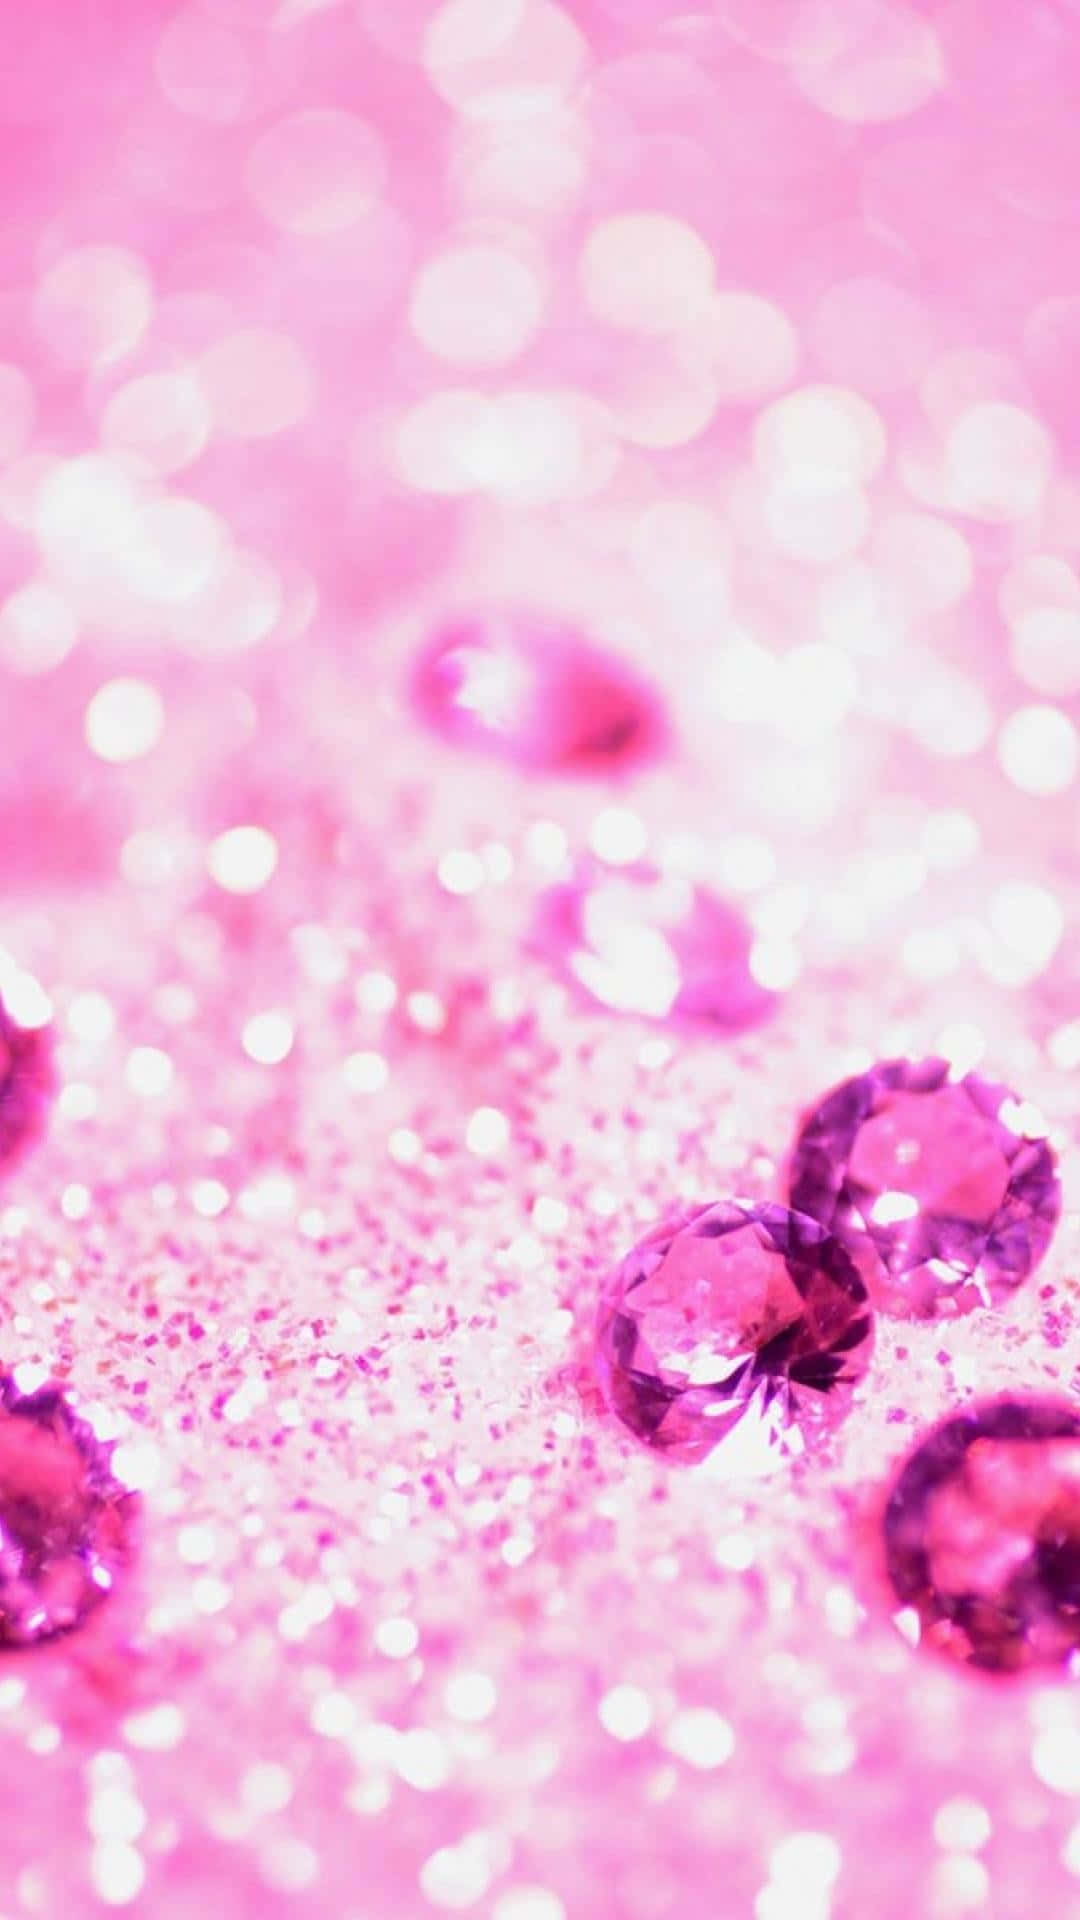 pink glitter wallpaper iphone